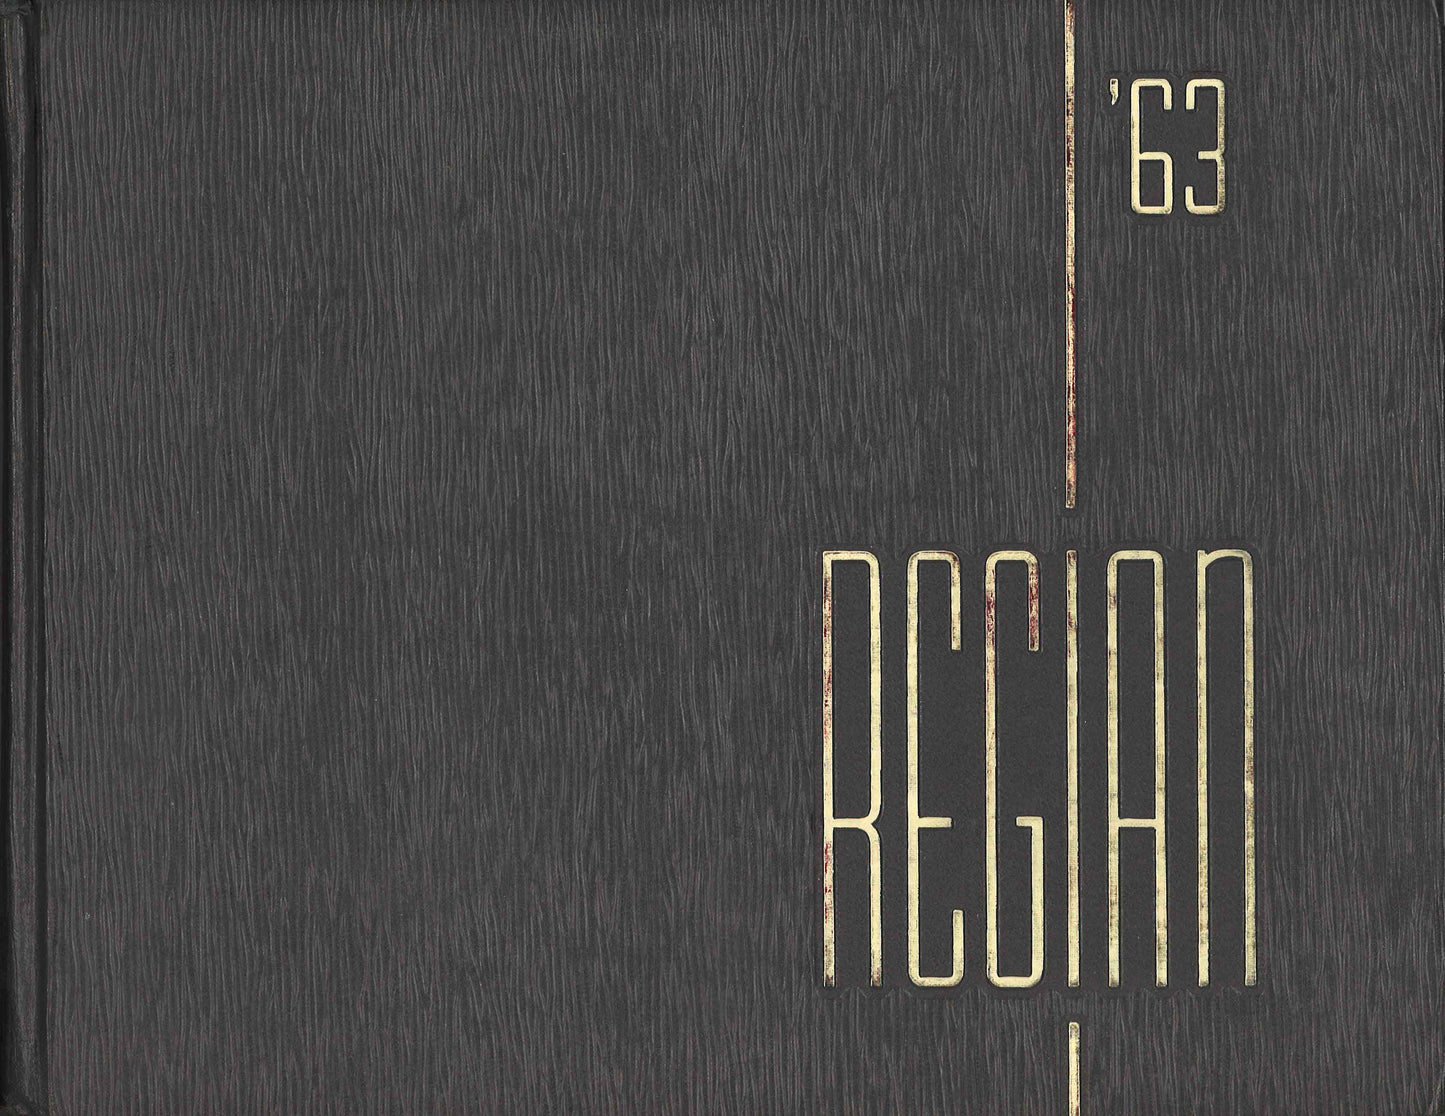 The Regian - 1963